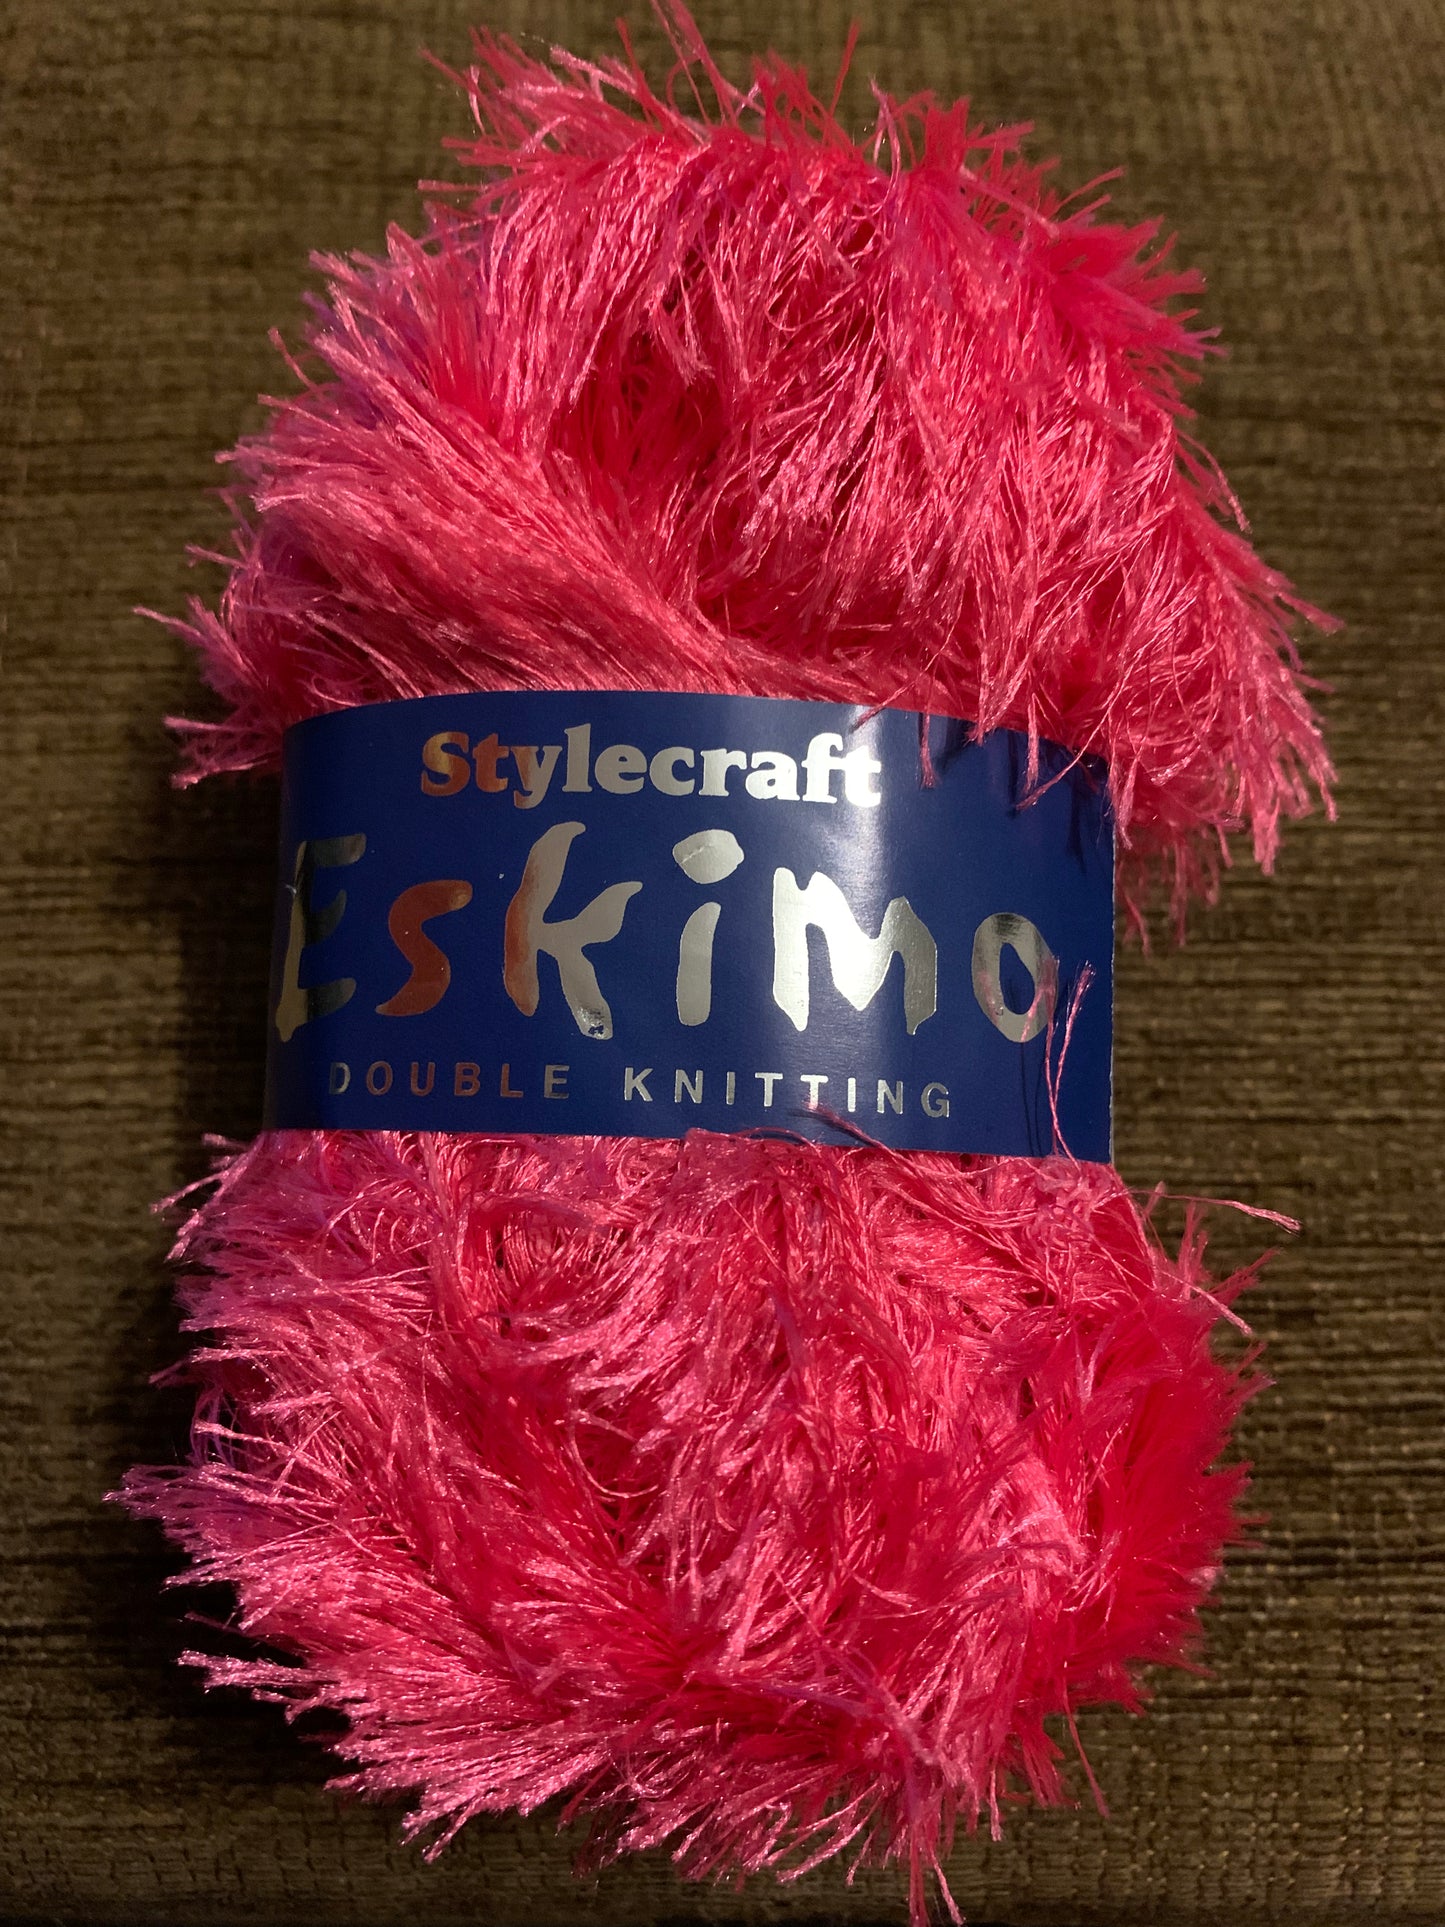 Stylecraft Eskimo Double Knitting